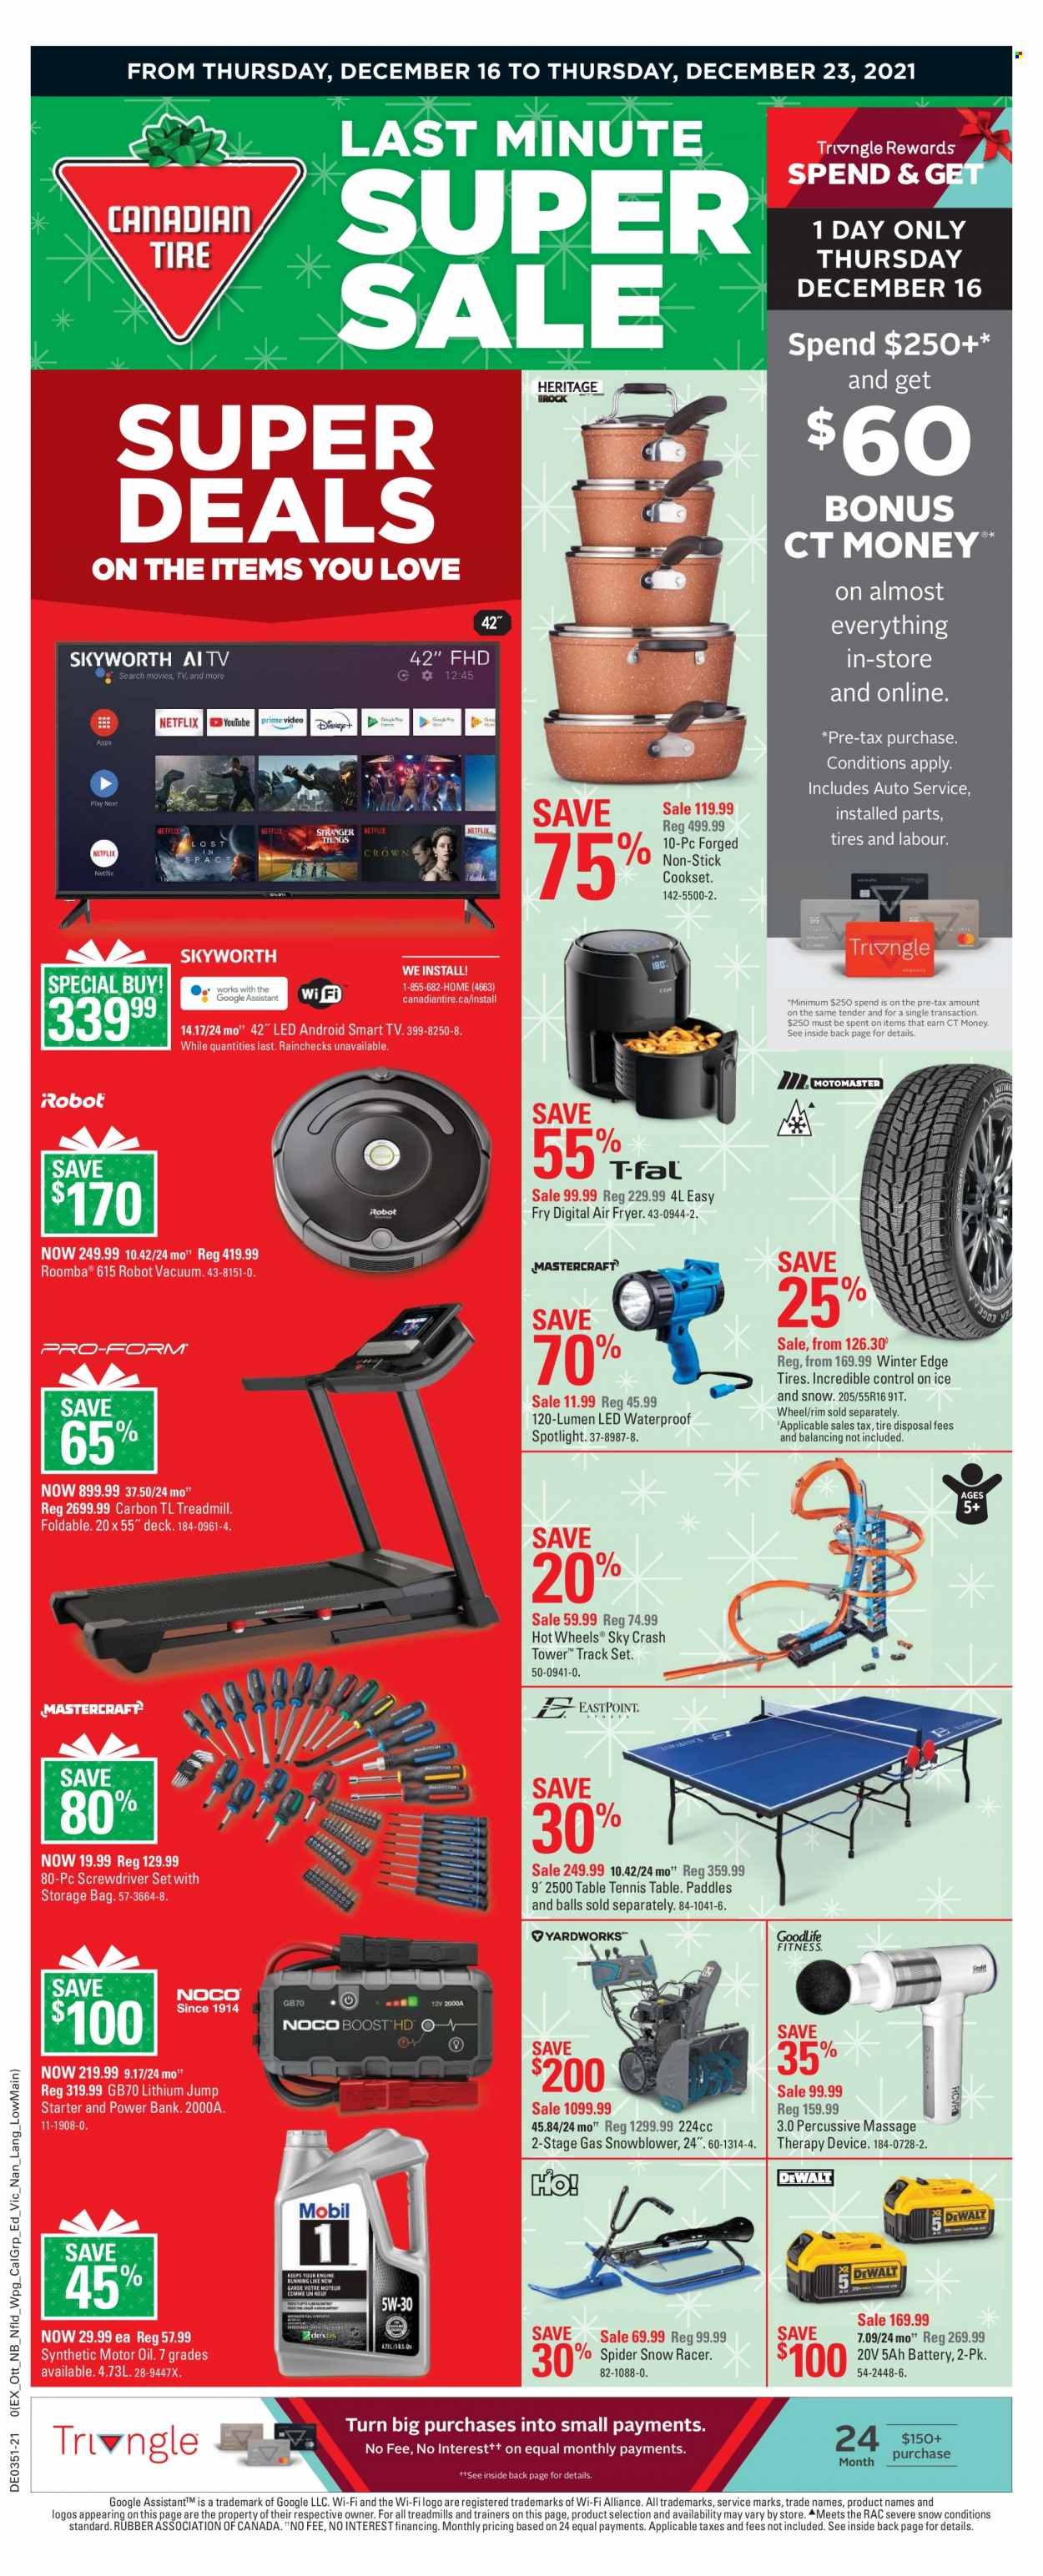 thumbnail - Circulaire Canadian Tire - 16 Décembre 2021 - 23 Décembre 2021 - Produits soldés - table, aspirateur robot, Hot Wheels, Roomba. Page 1.